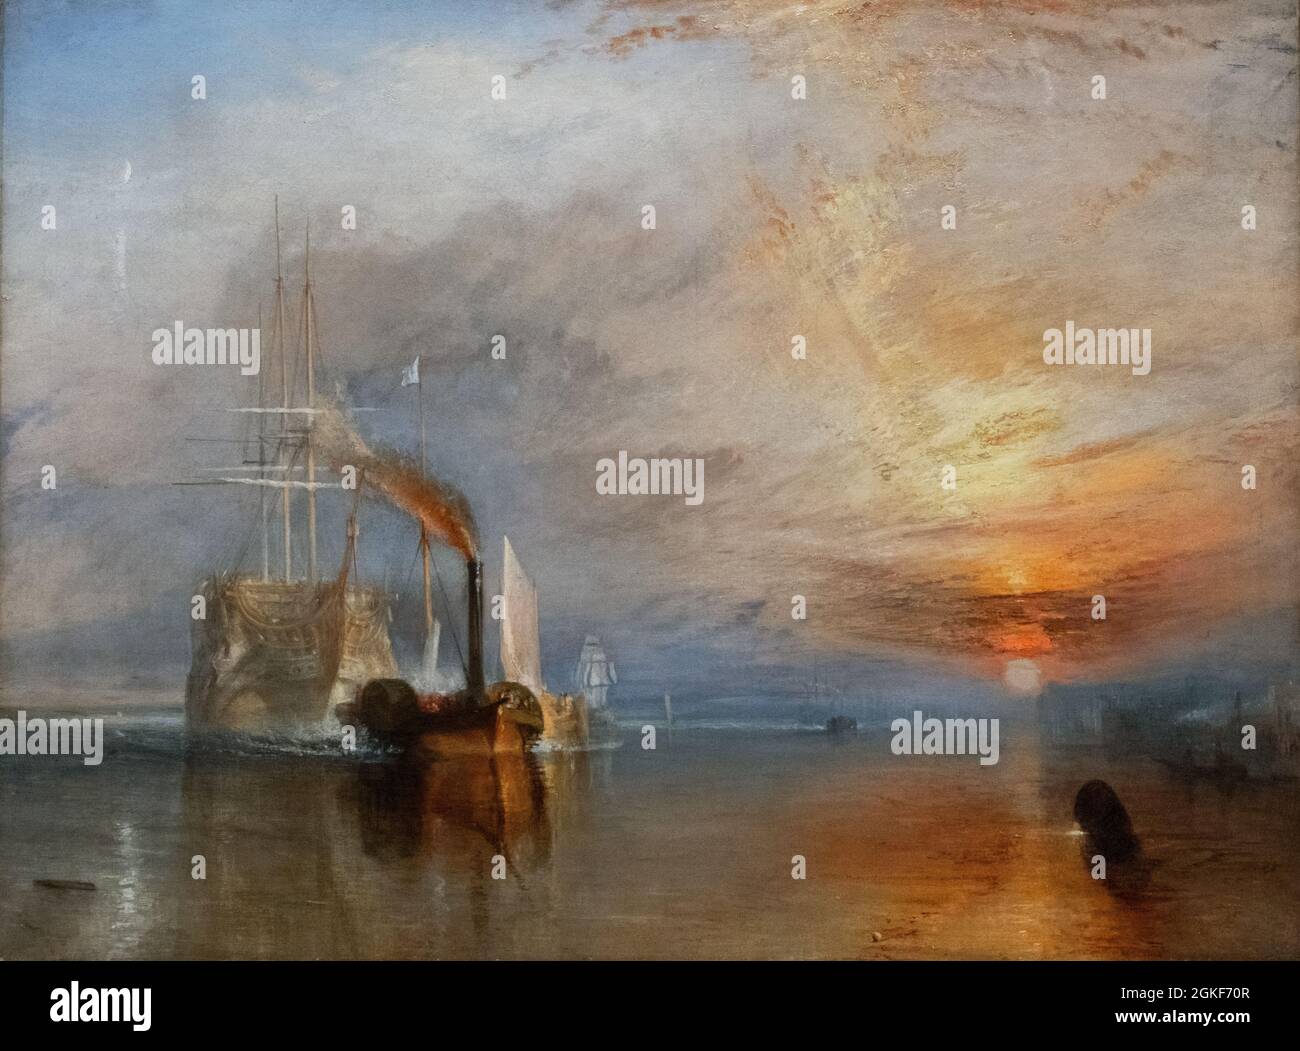 JMW Turner painting - The Fighting Temeraire, Oil painting 1838; 19th siècle peintre britannique de l'époque romantique Banque D'Images